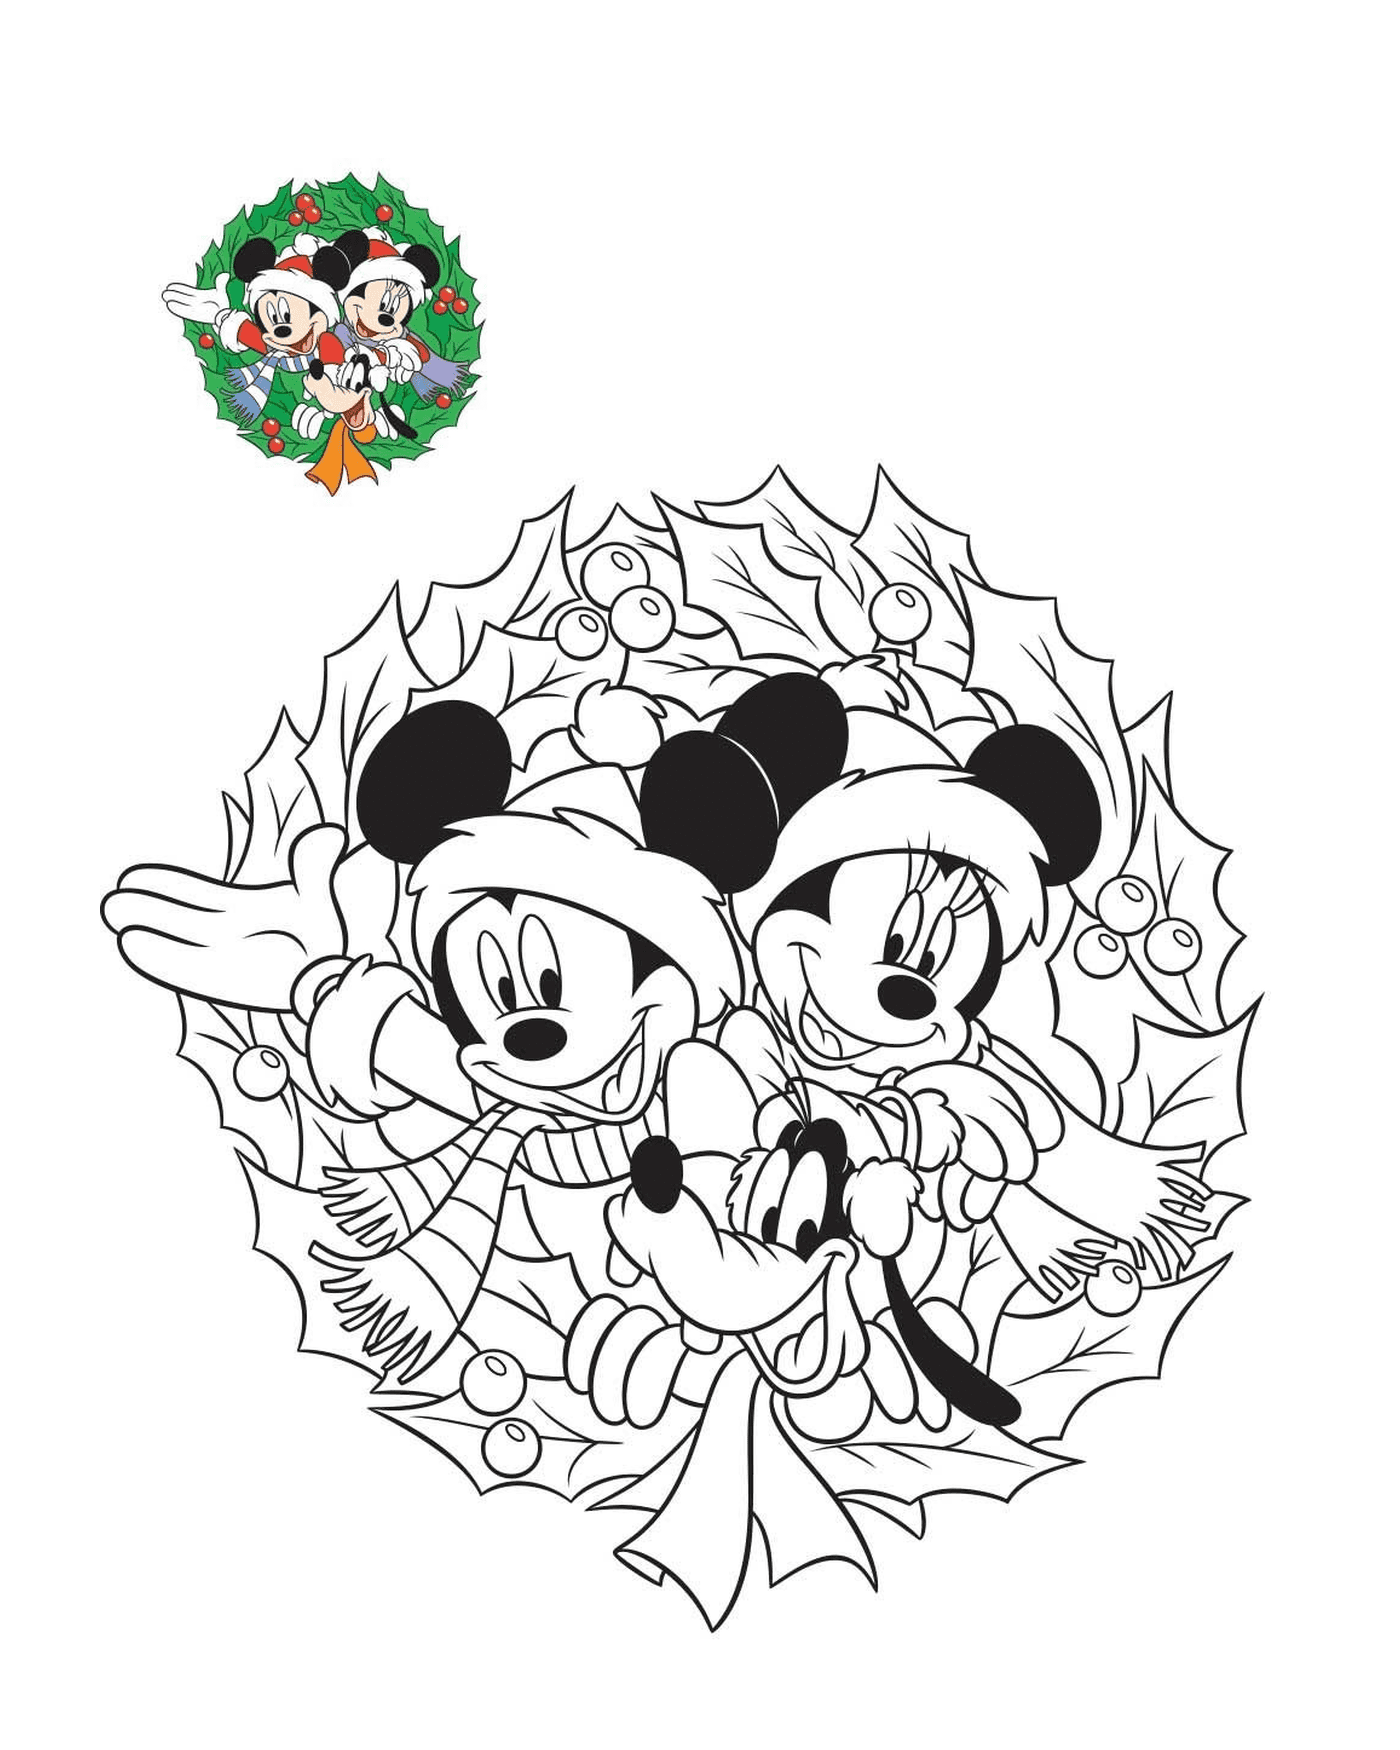  Mickey e Minnie em preparação 